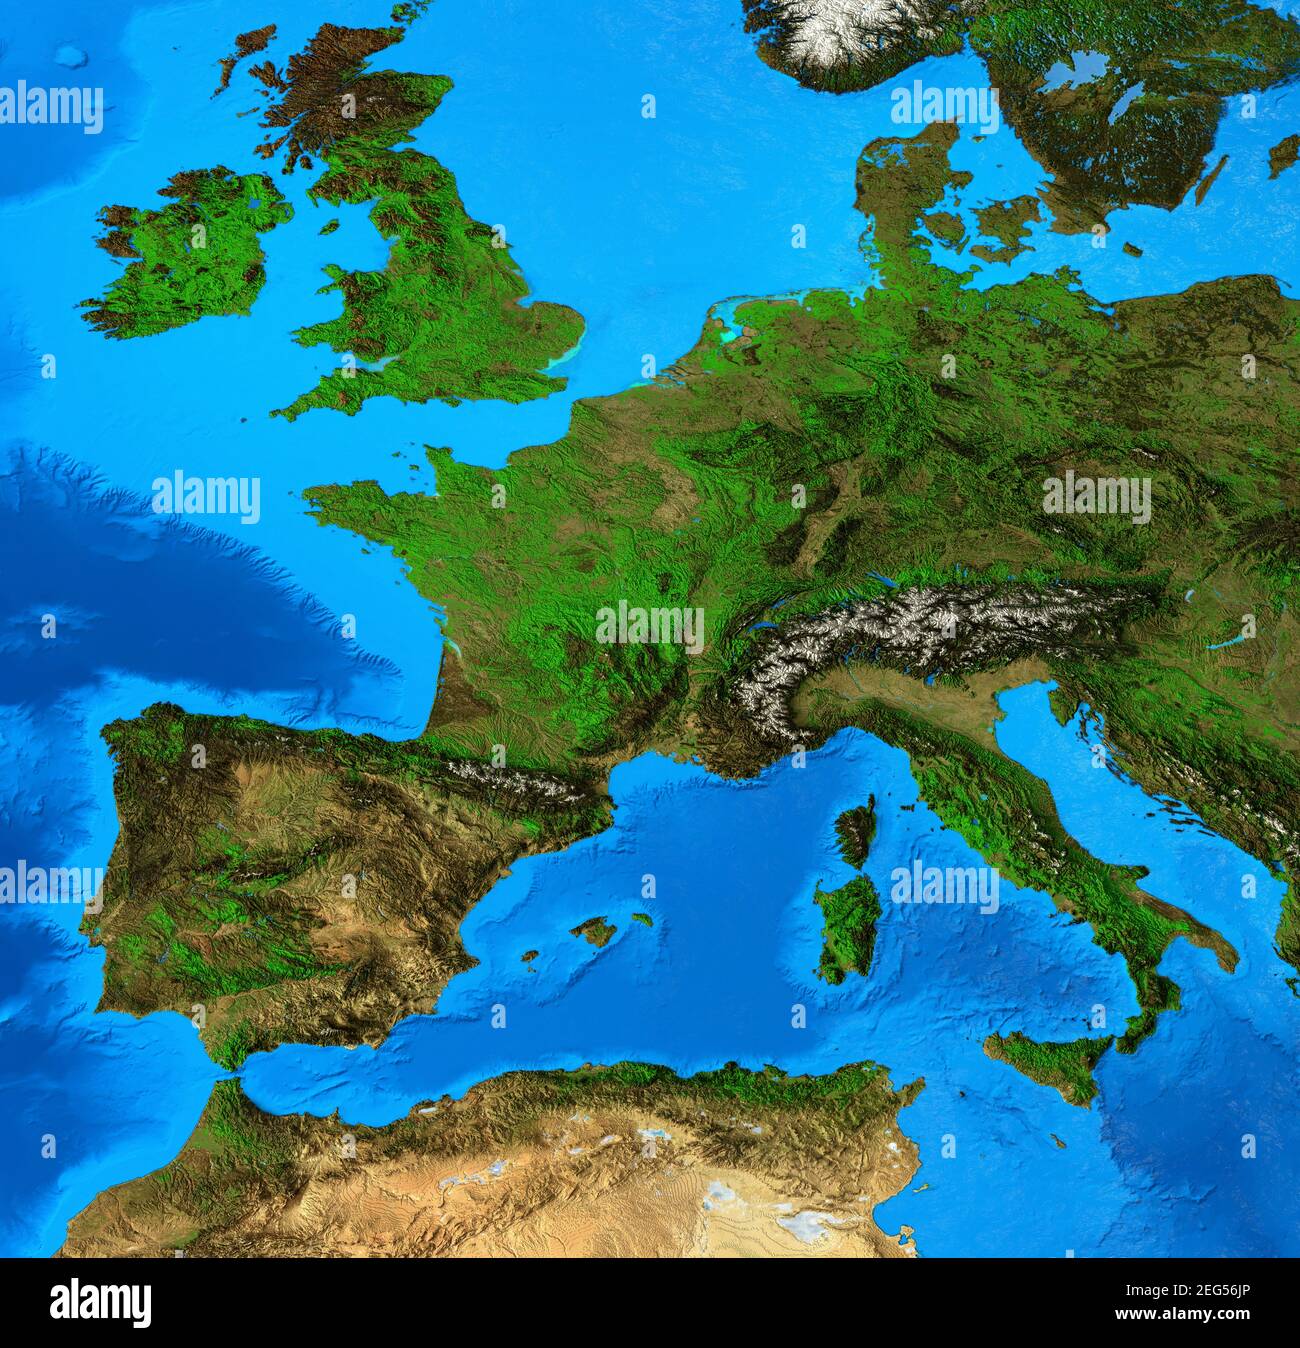 Carte physique de l'Europe de l'Ouest. Vue plate détaillée de la planète Terre et de ses formes terrestres. Illustration 3D - éléments de cette image fournis par la NASA Banque D'Images